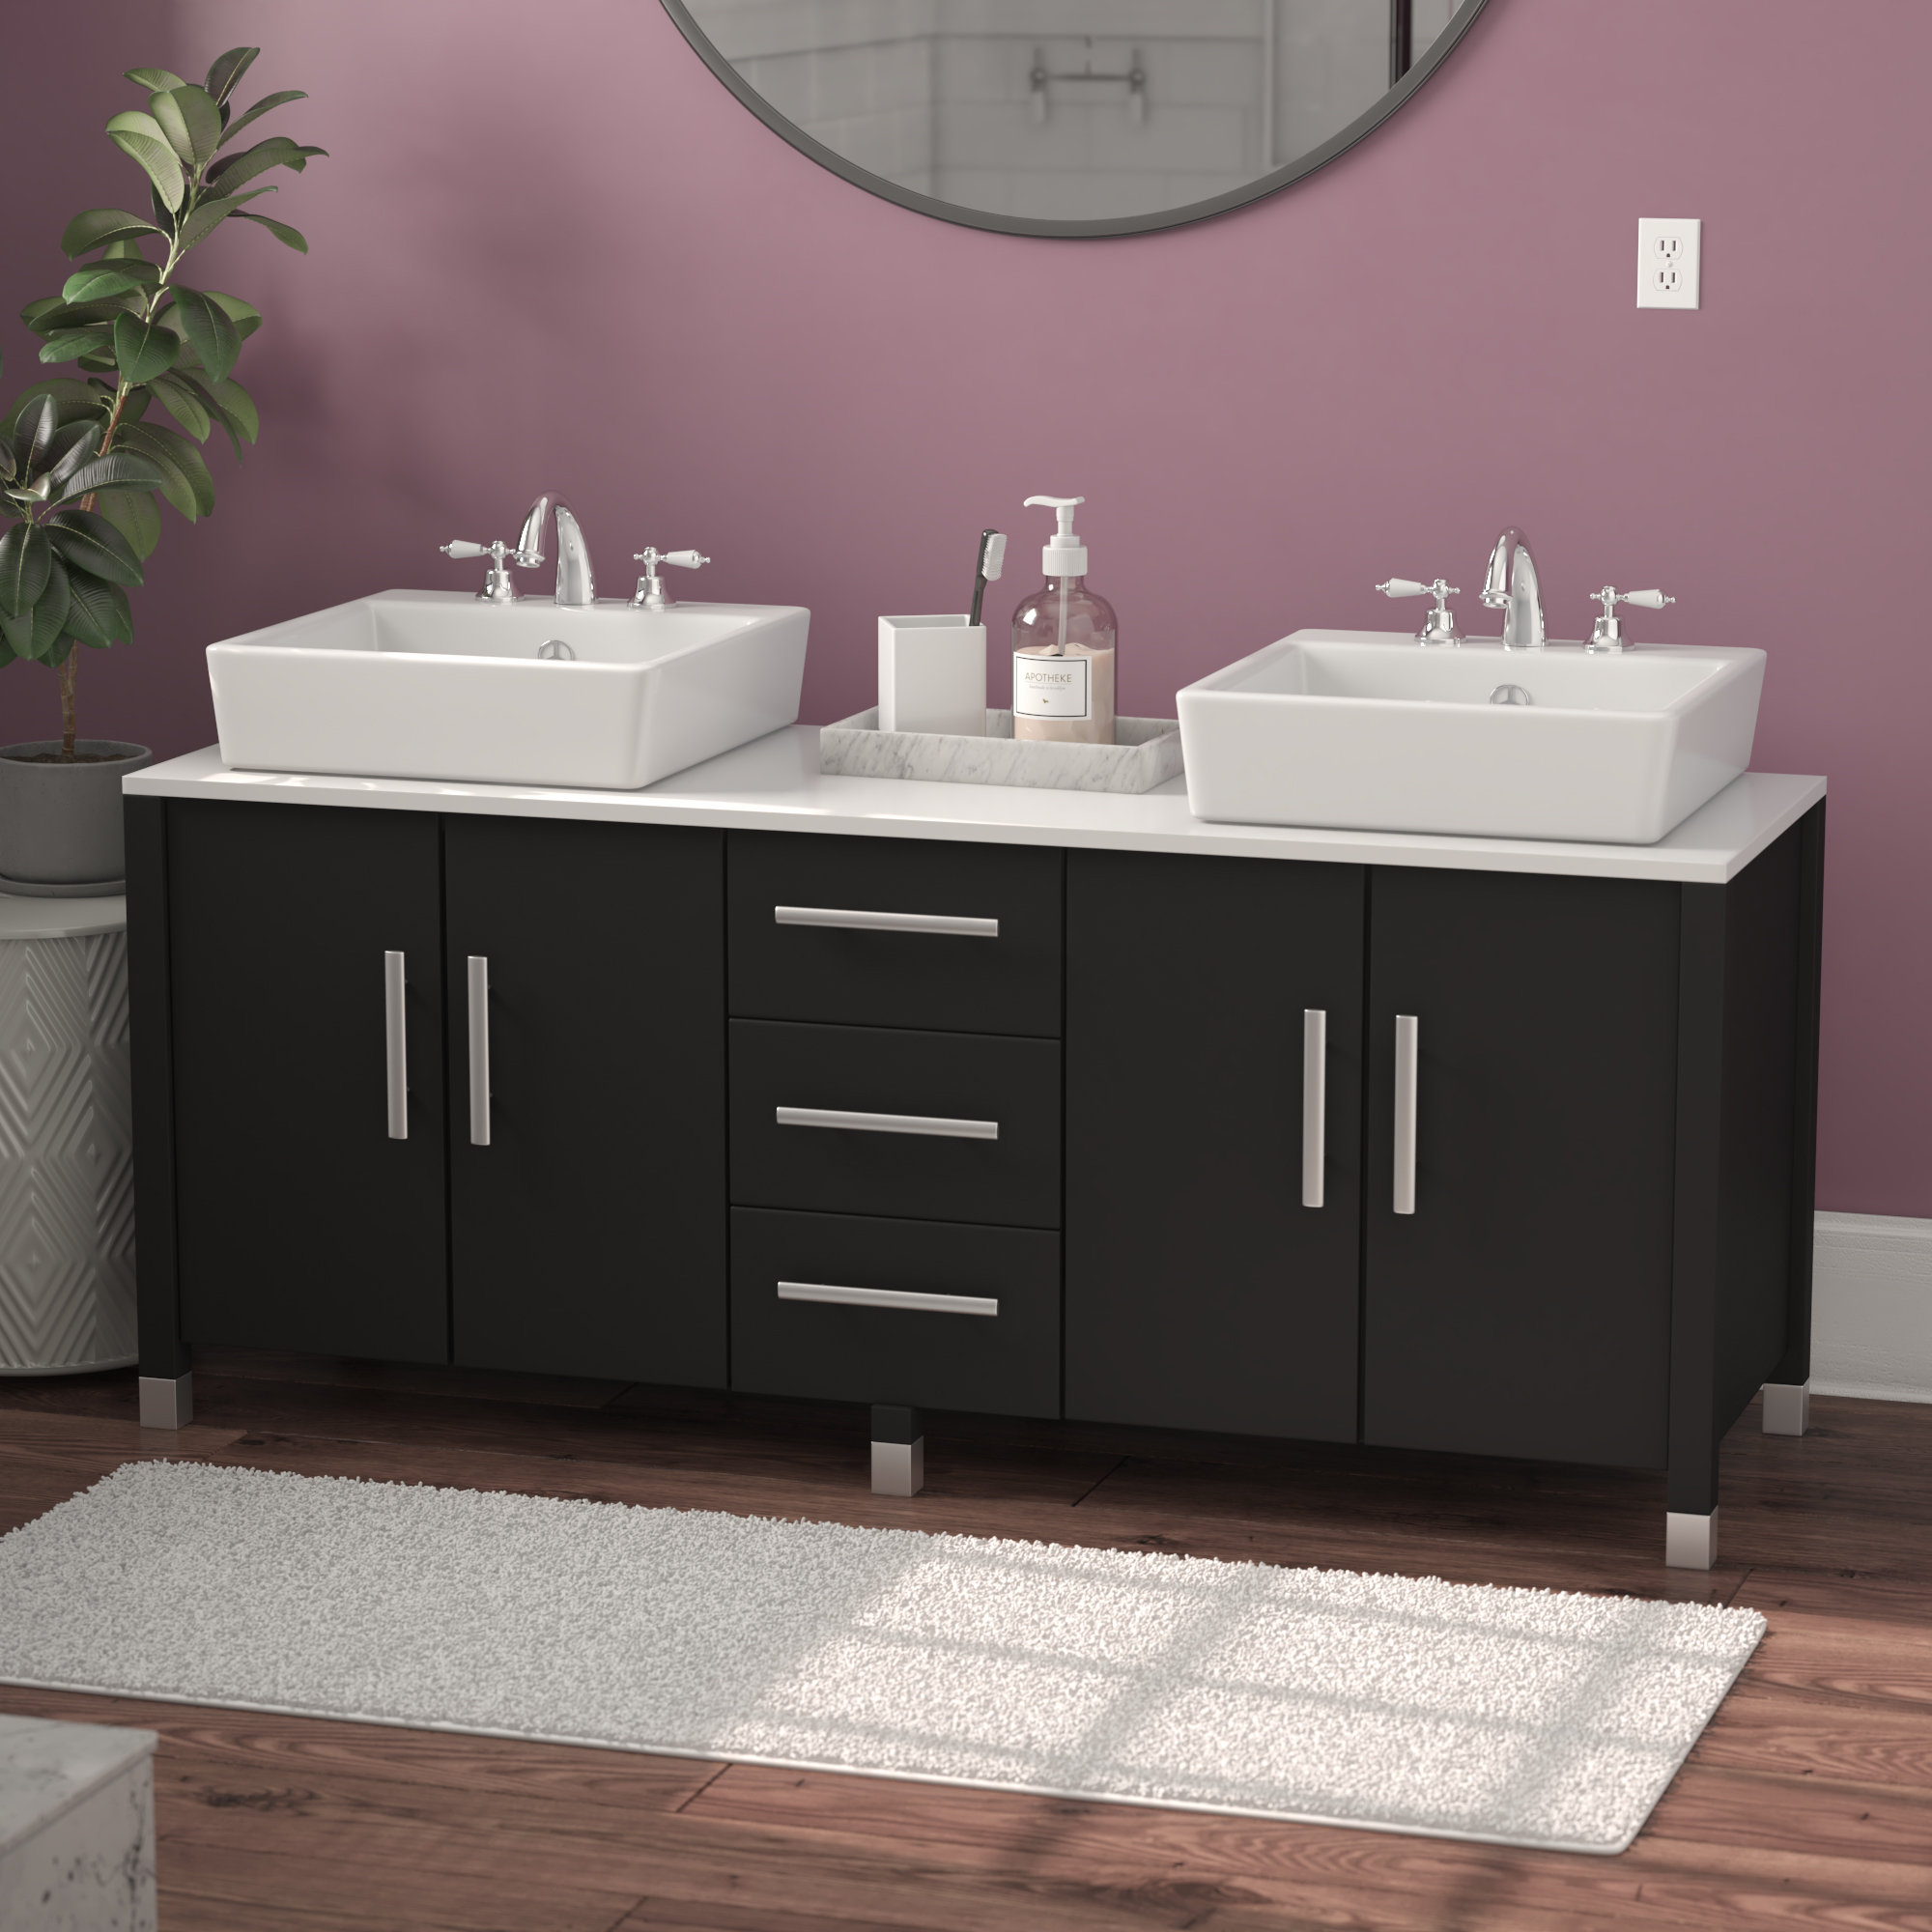 Ebern Designs Kellison 59 Double Bathroom Vanity Reviews Wayfair